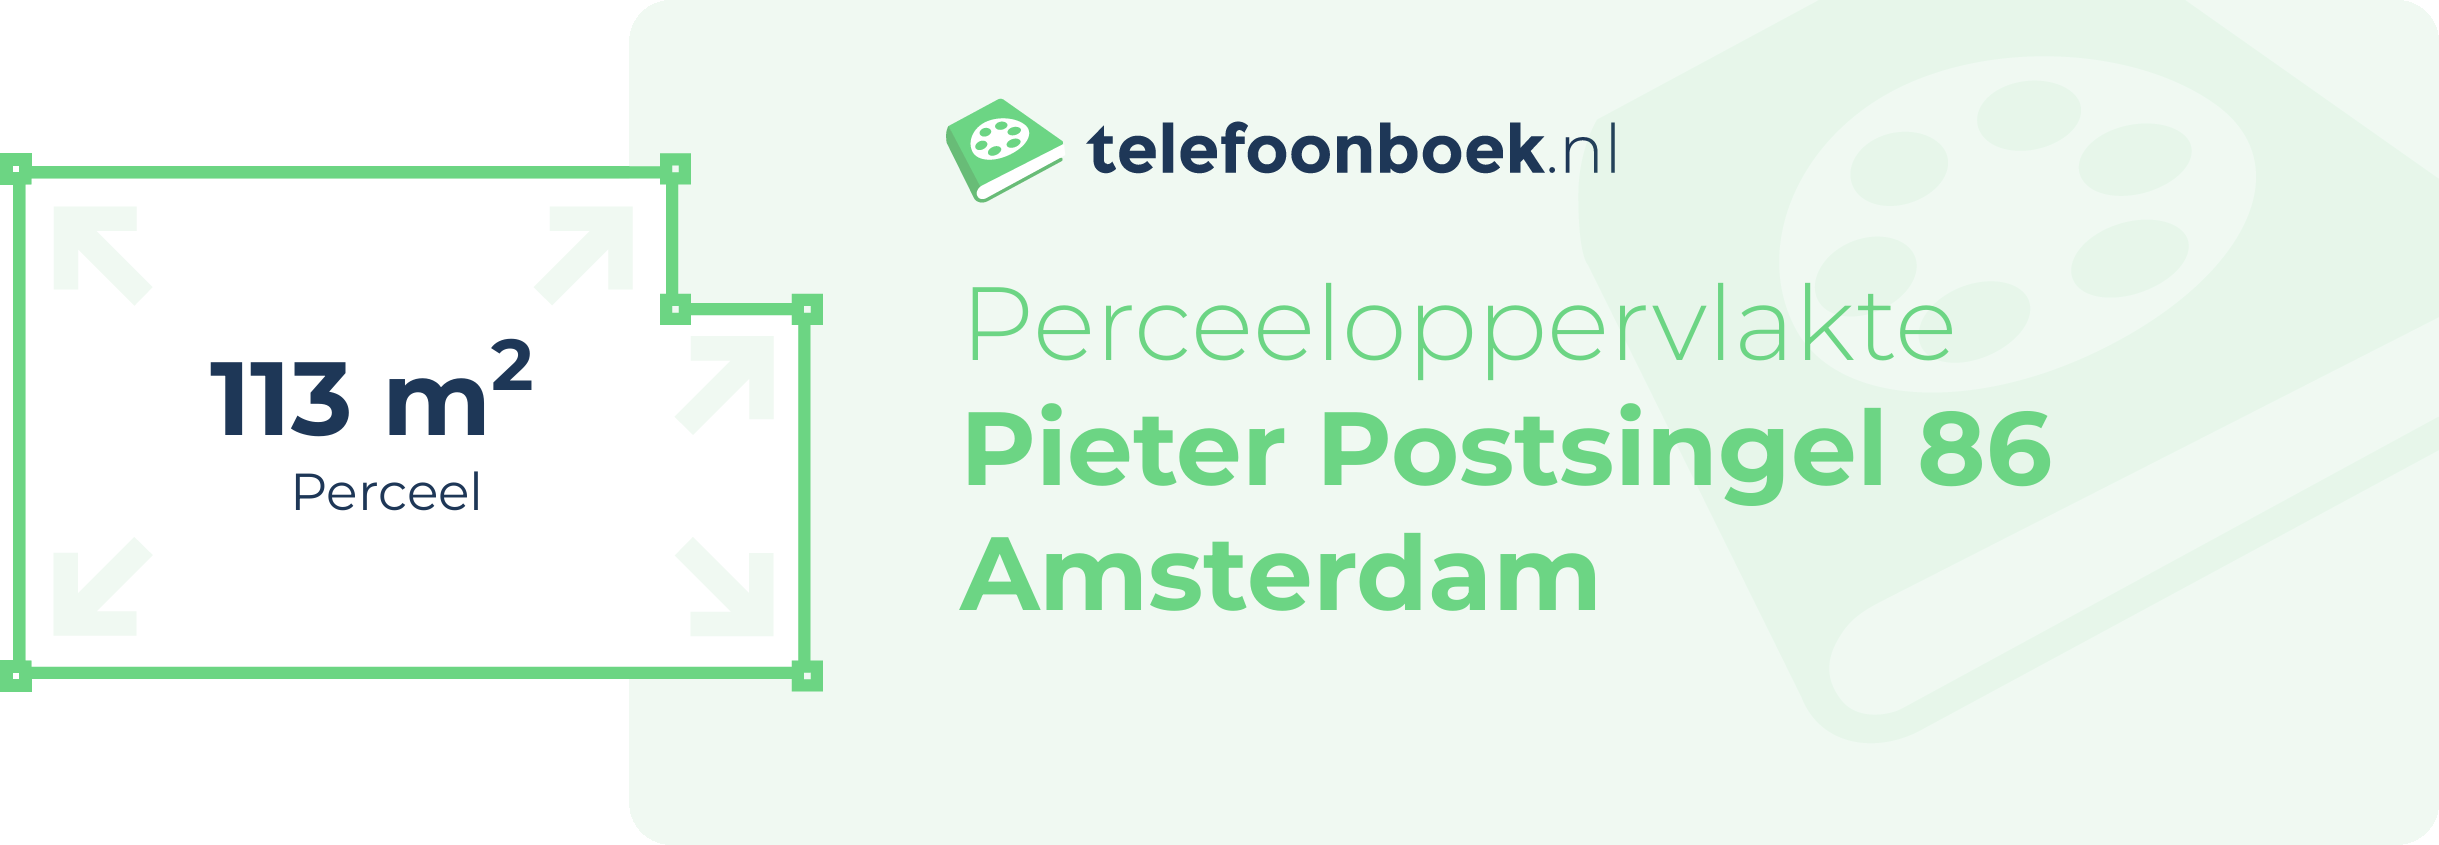 Perceeloppervlakte Pieter Postsingel 86 Amsterdam